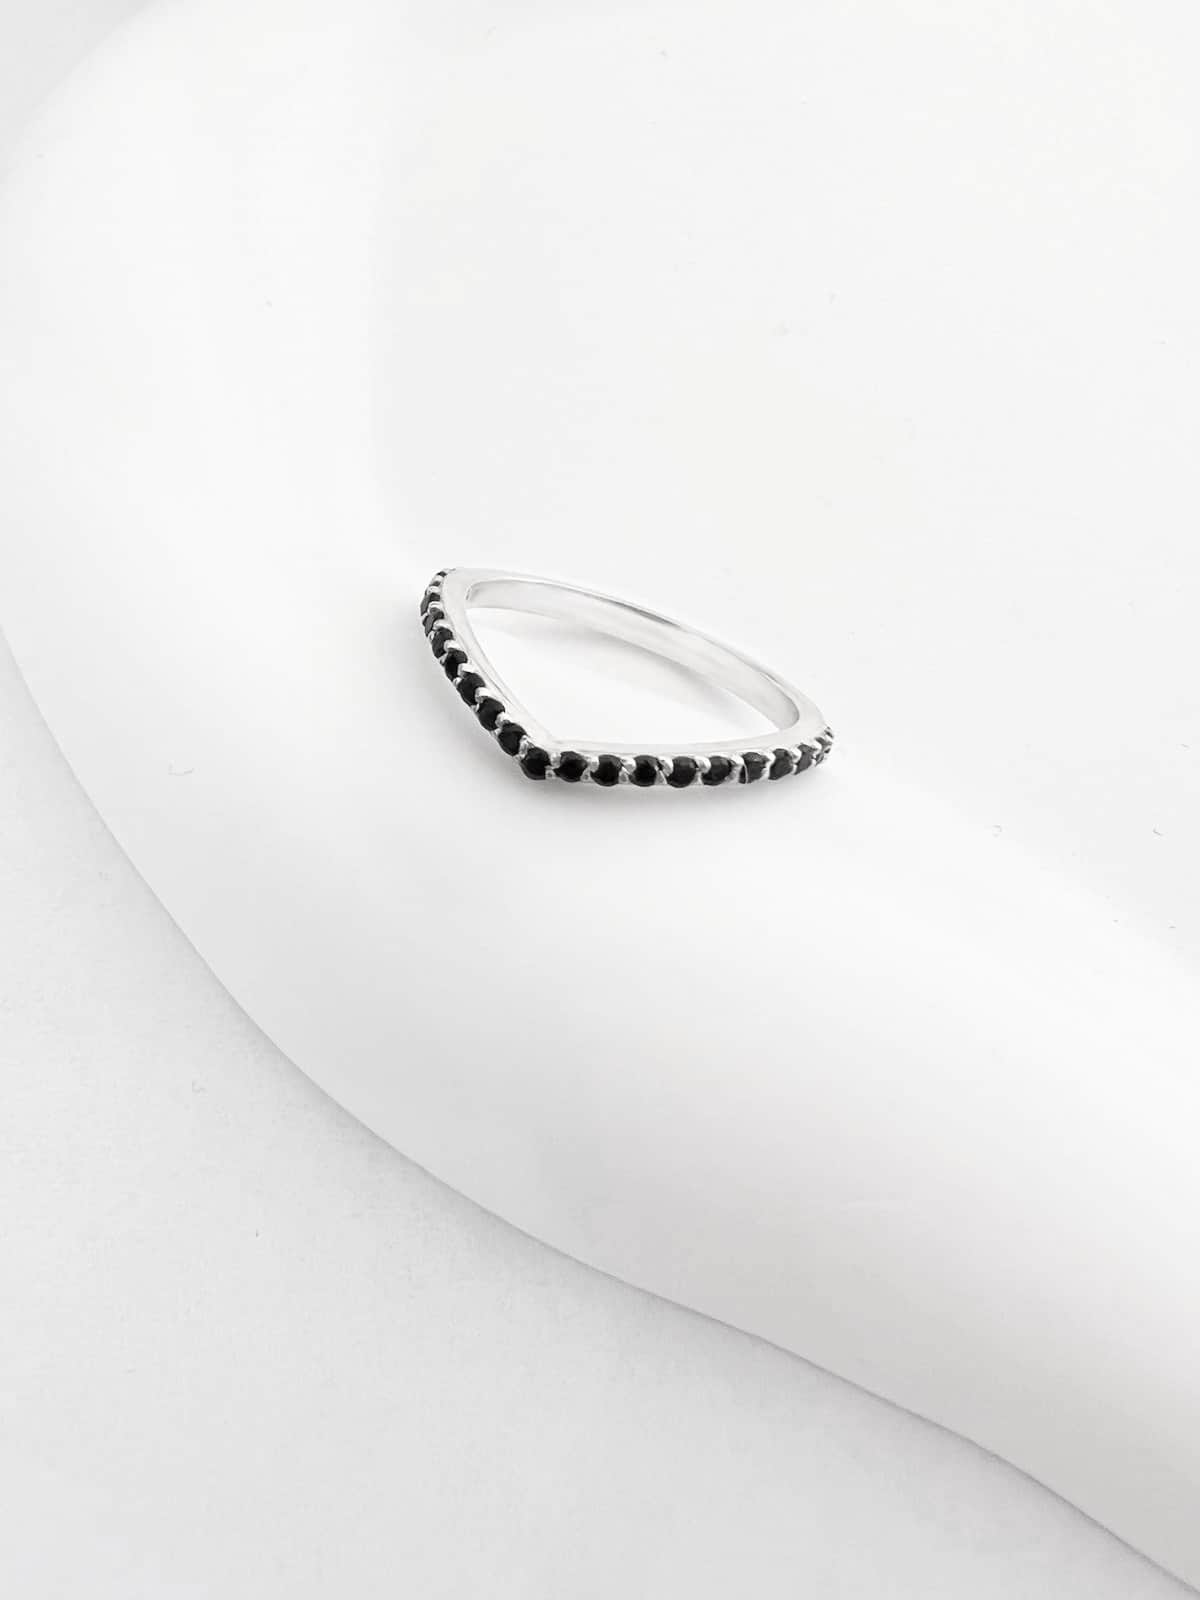 טבעת וי שחורה, טבעת אוניקס, טבעת חץ, טבעת כסף וי שחורה לאישה, טבעת וי אוניקס,